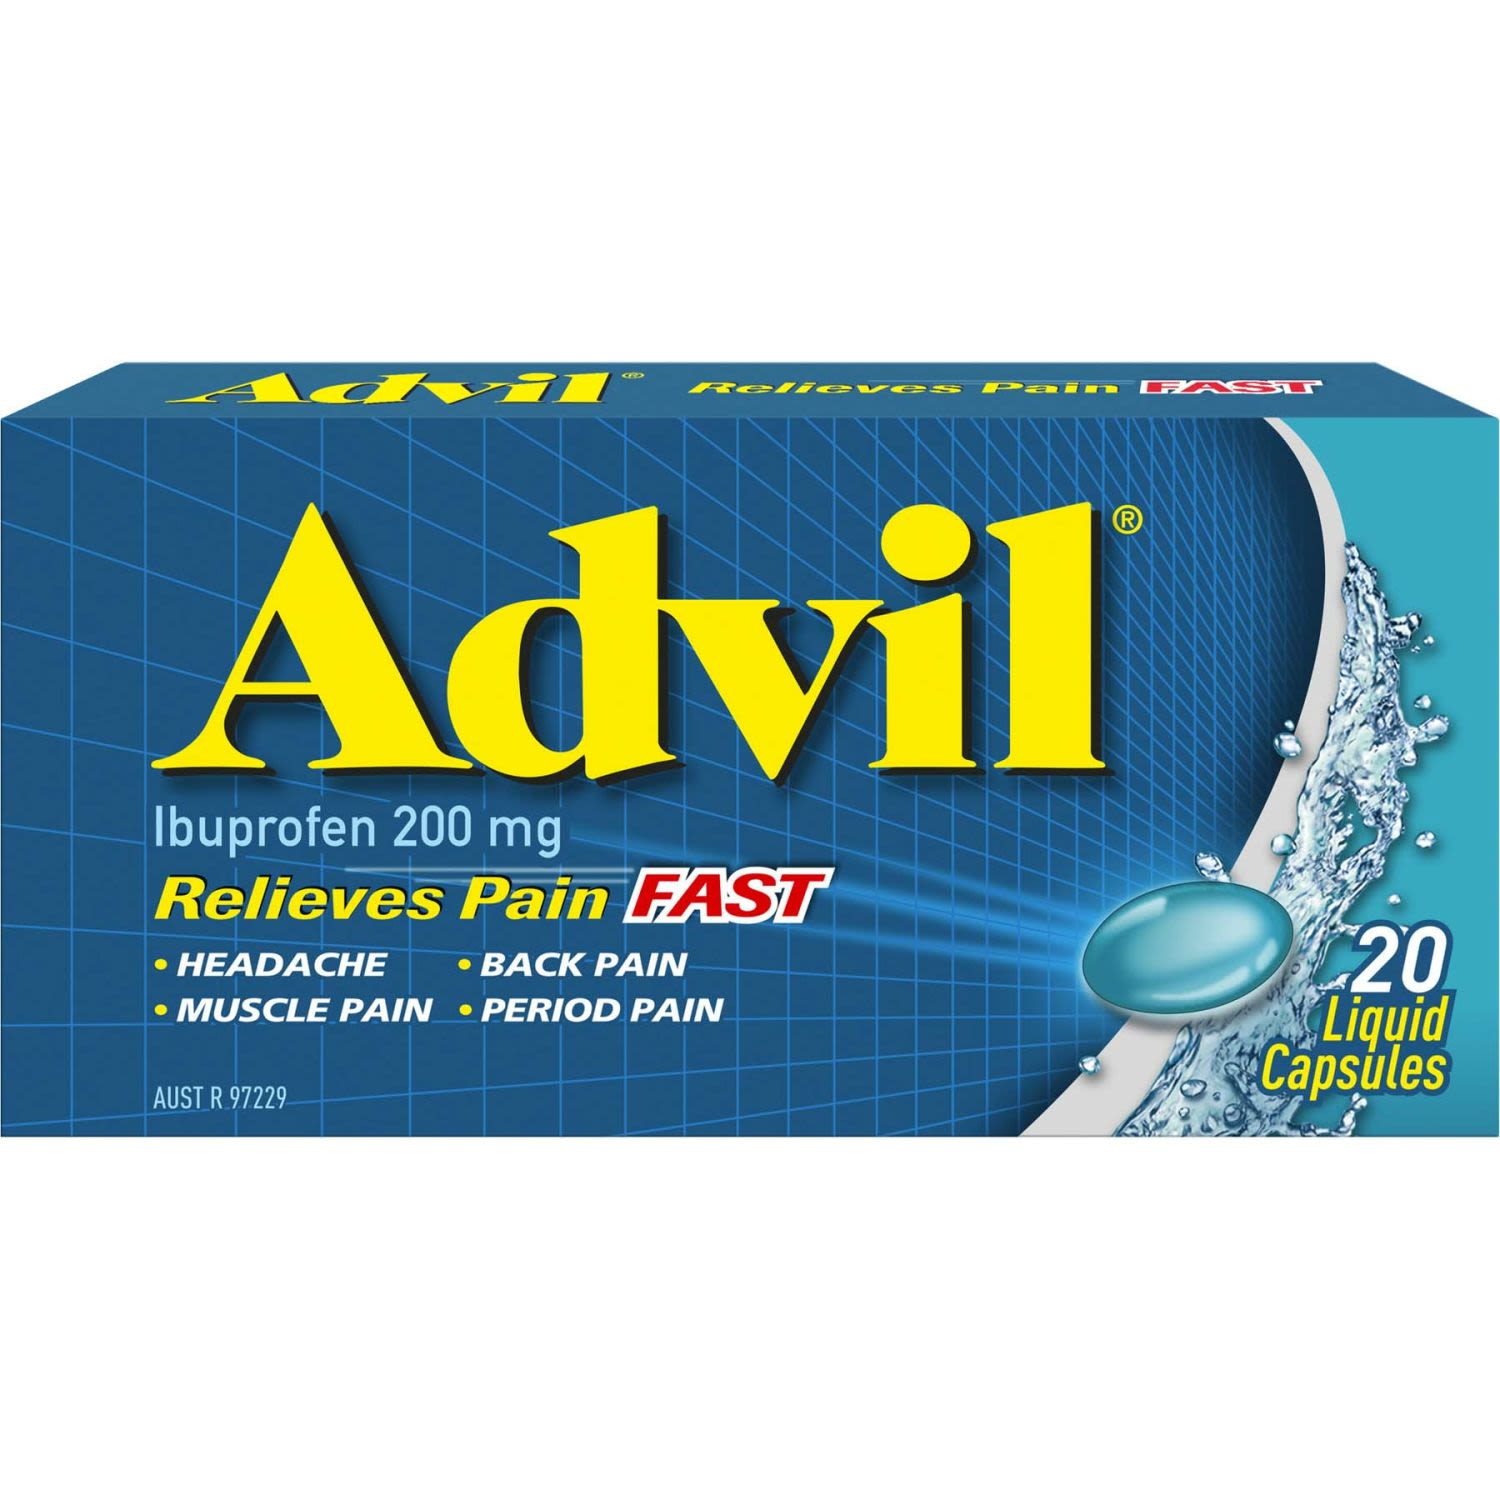 Advil Liquid Capsules, 20 Each